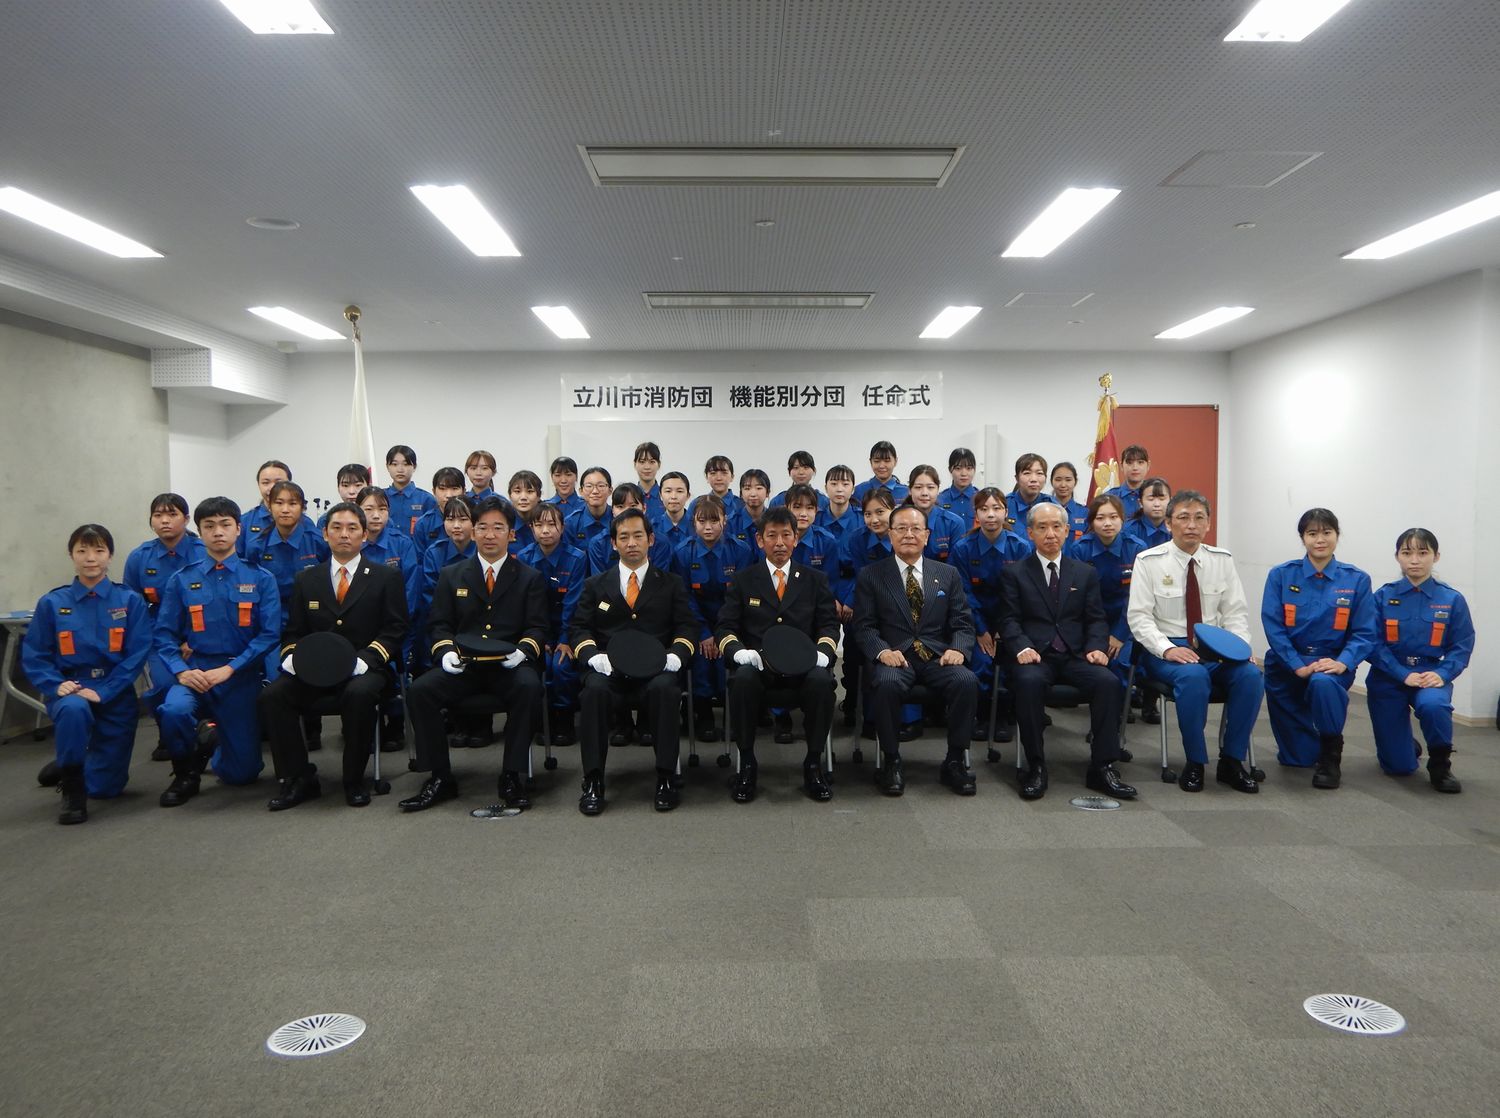 東京医療保健大学が 立川市と立川市消防団任命式及び規律訓練を実施 学校法人青葉学園のプレスリリース